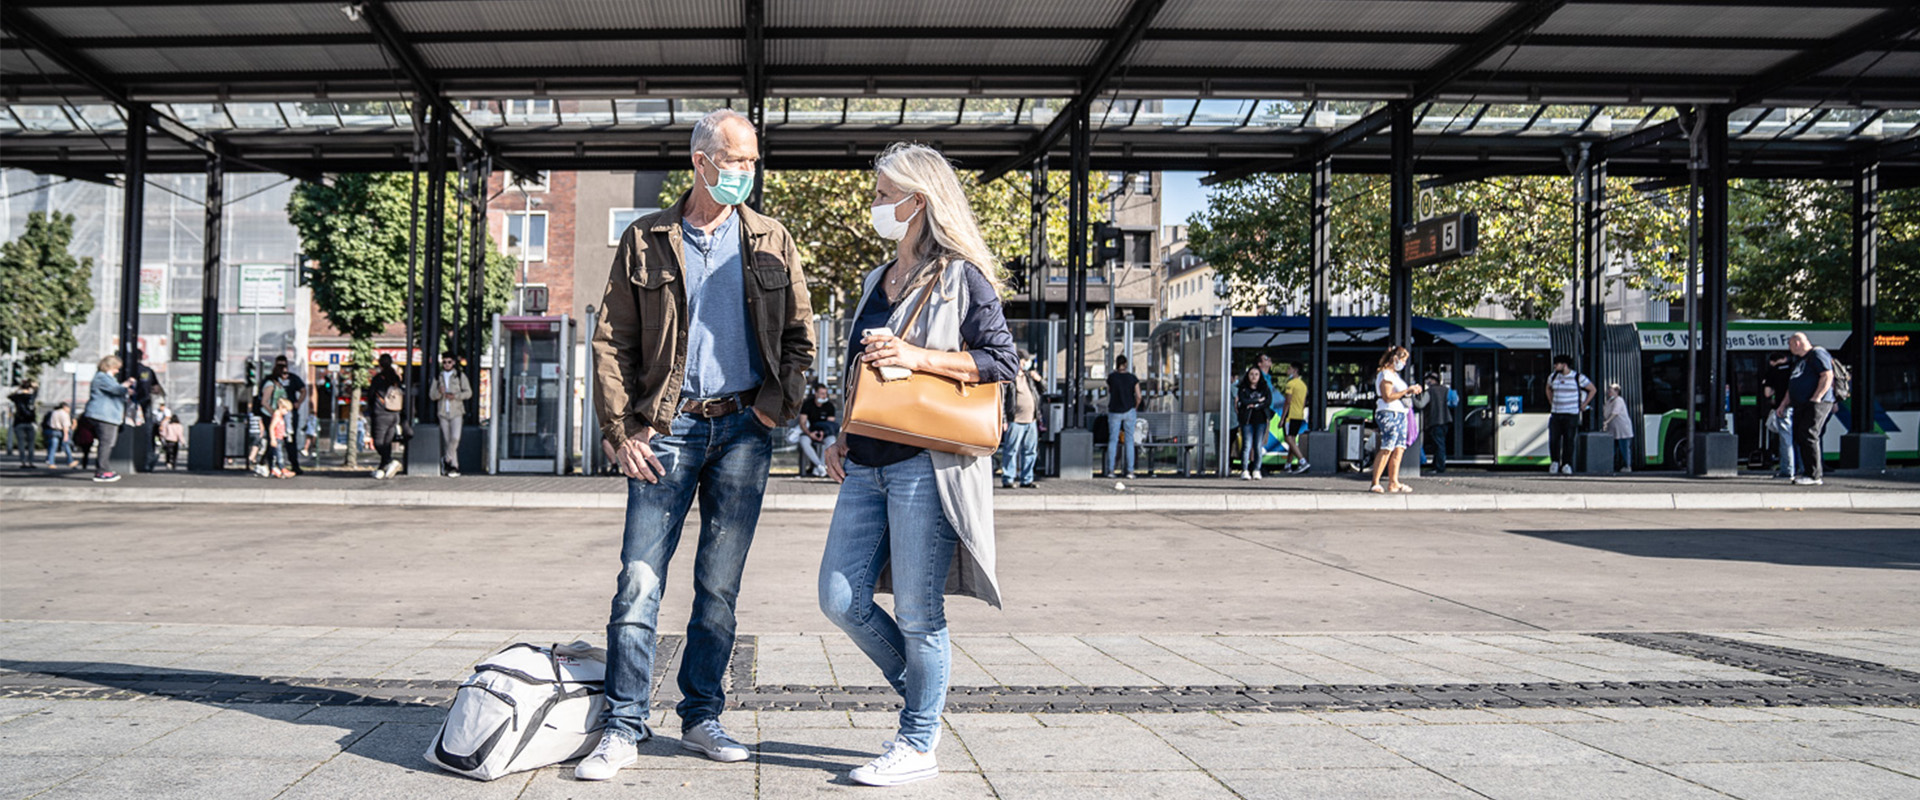 Frau und Mann mit Maske stehen vor Bushaltestellen